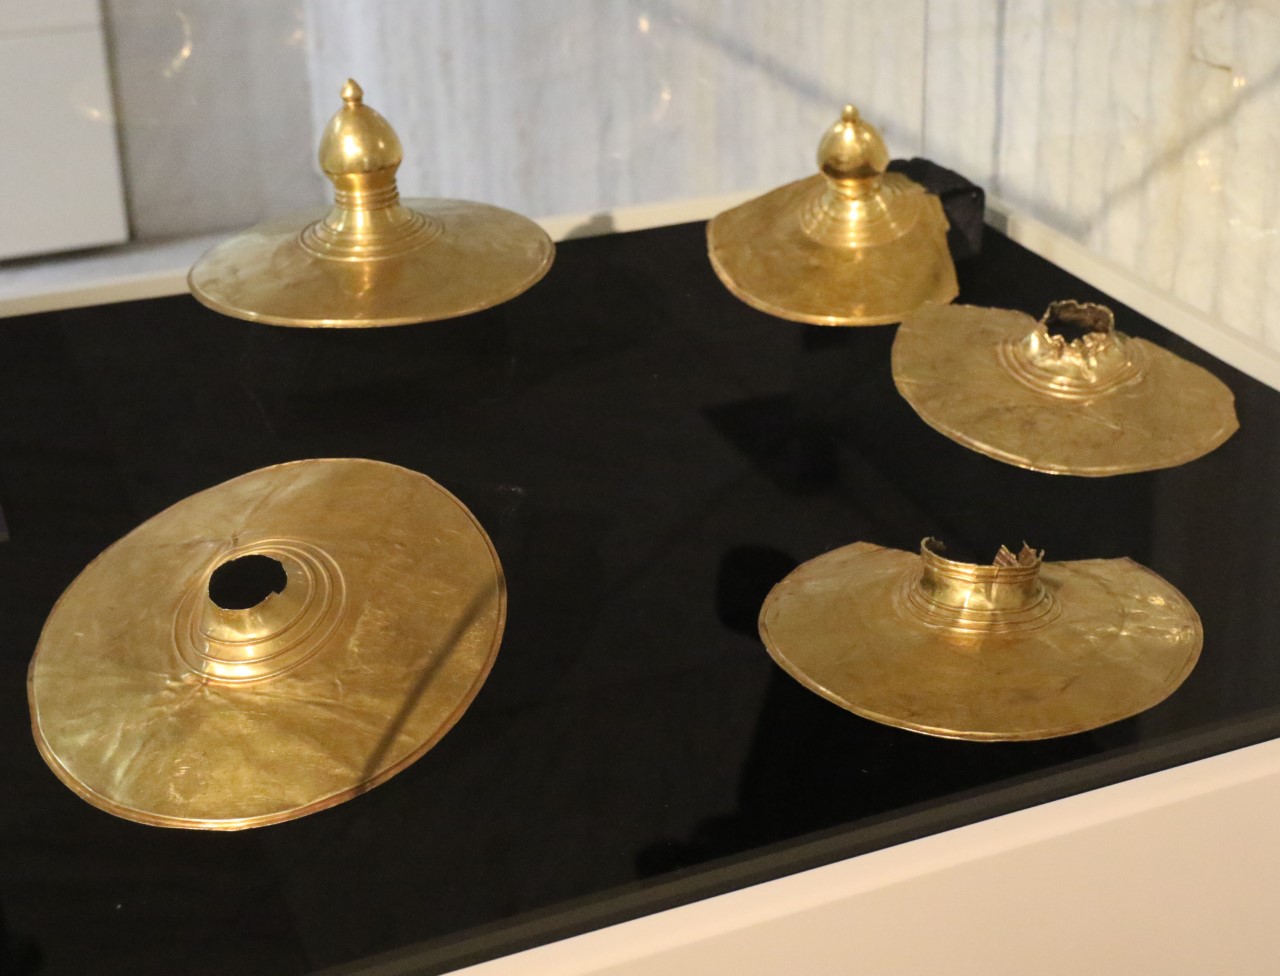 <p>Вълчитрънското златно съкровище е намерено през 1925 година в село Вълчитрън, Плевенско. То е един от най-великолепните паметници на тракийската култура с общо тегло 12.4 килограма. Състои от 13 предмета: голяма и дълбока купа с две дръжки, голяма чаша черпак с една дръжка, три малки чаши (киатоси), седем диска (2 големи и 5 малки) и един триделен съд.</p>